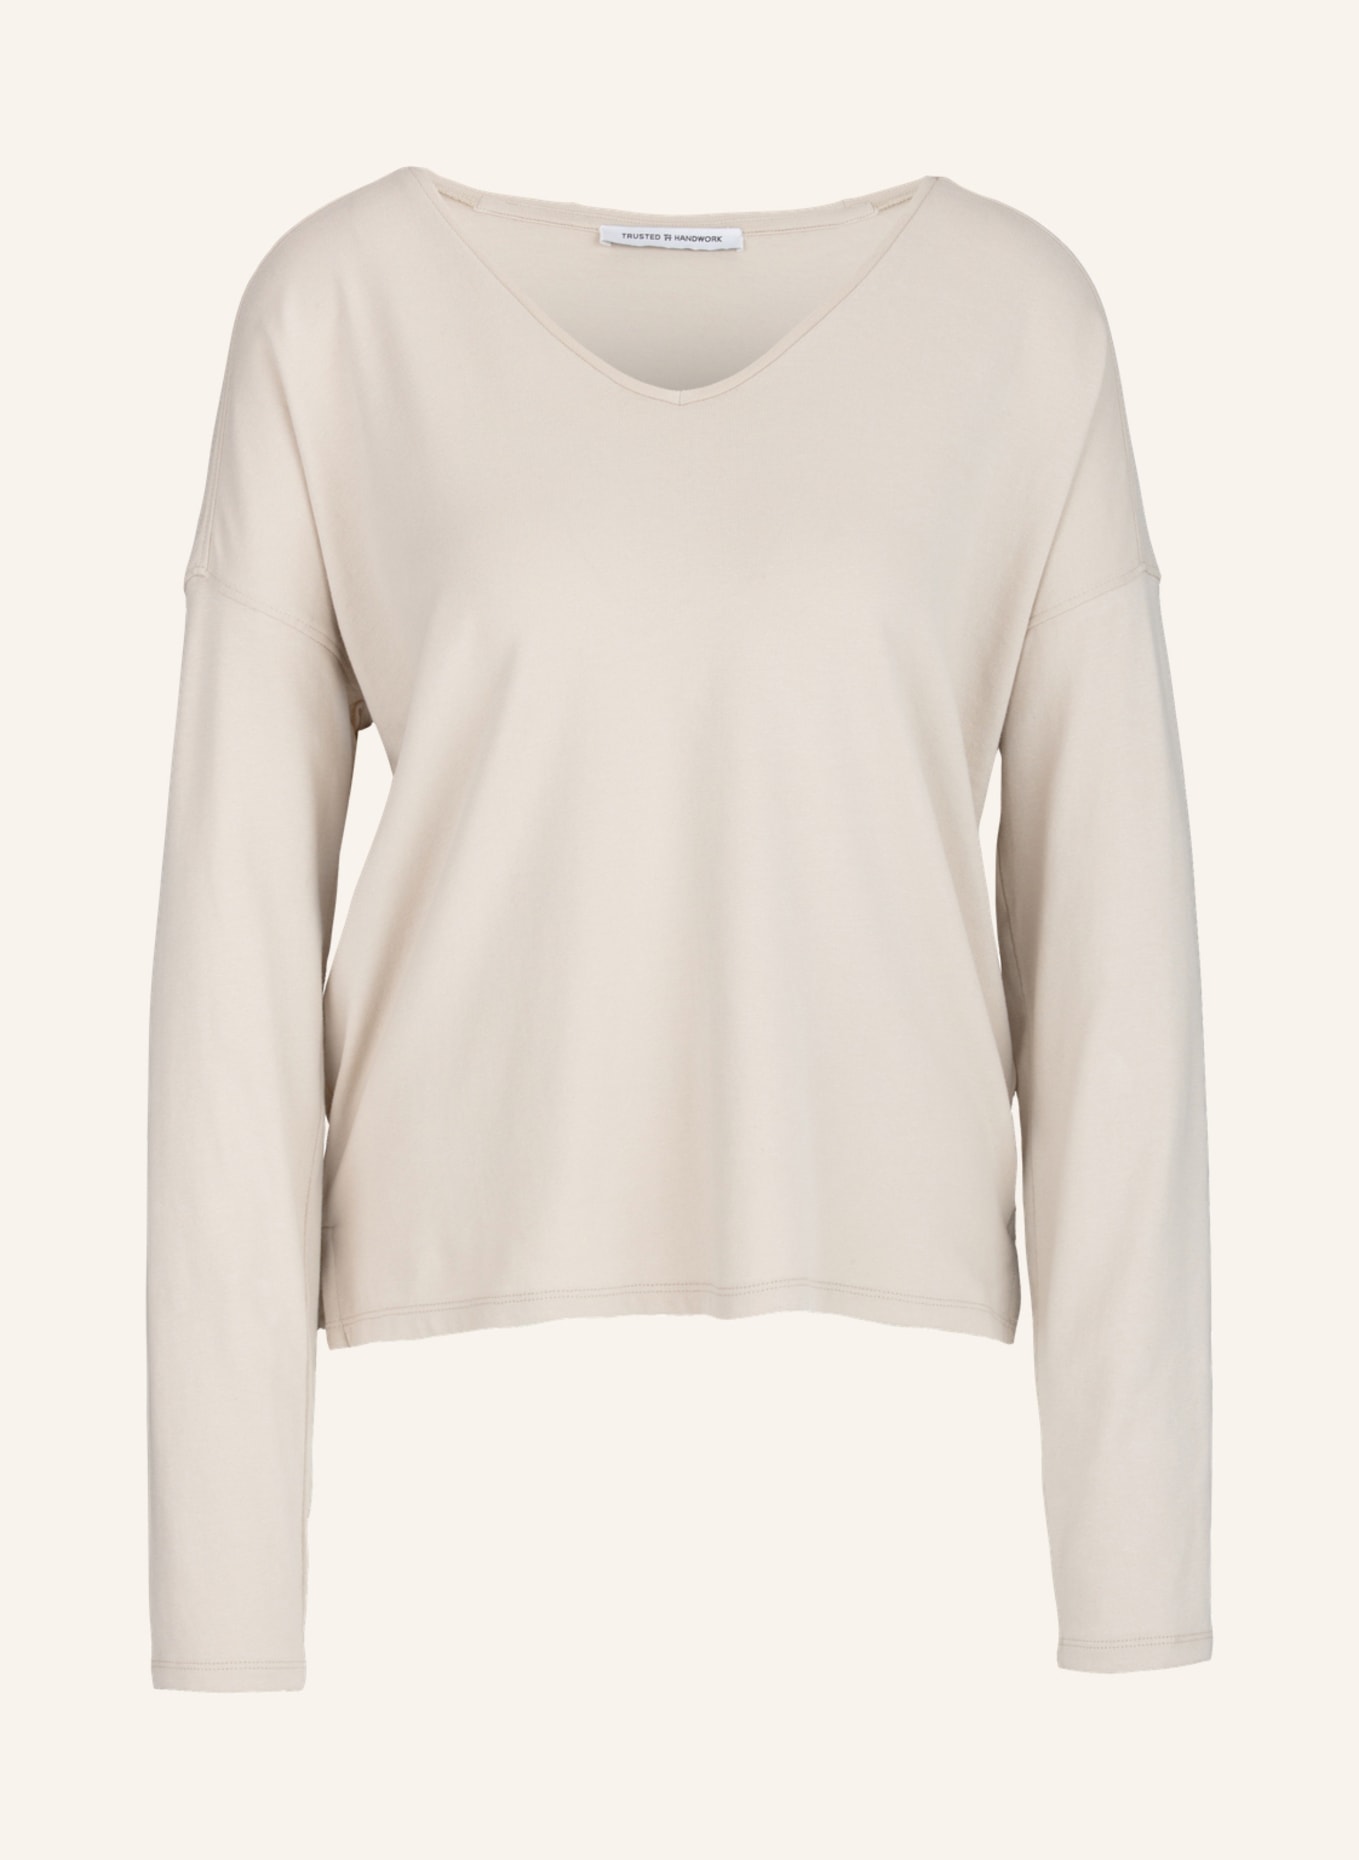 TRUSTED HANDWORK Sweatshirt RENNES, Farbe: BEIGE (Bild 1)